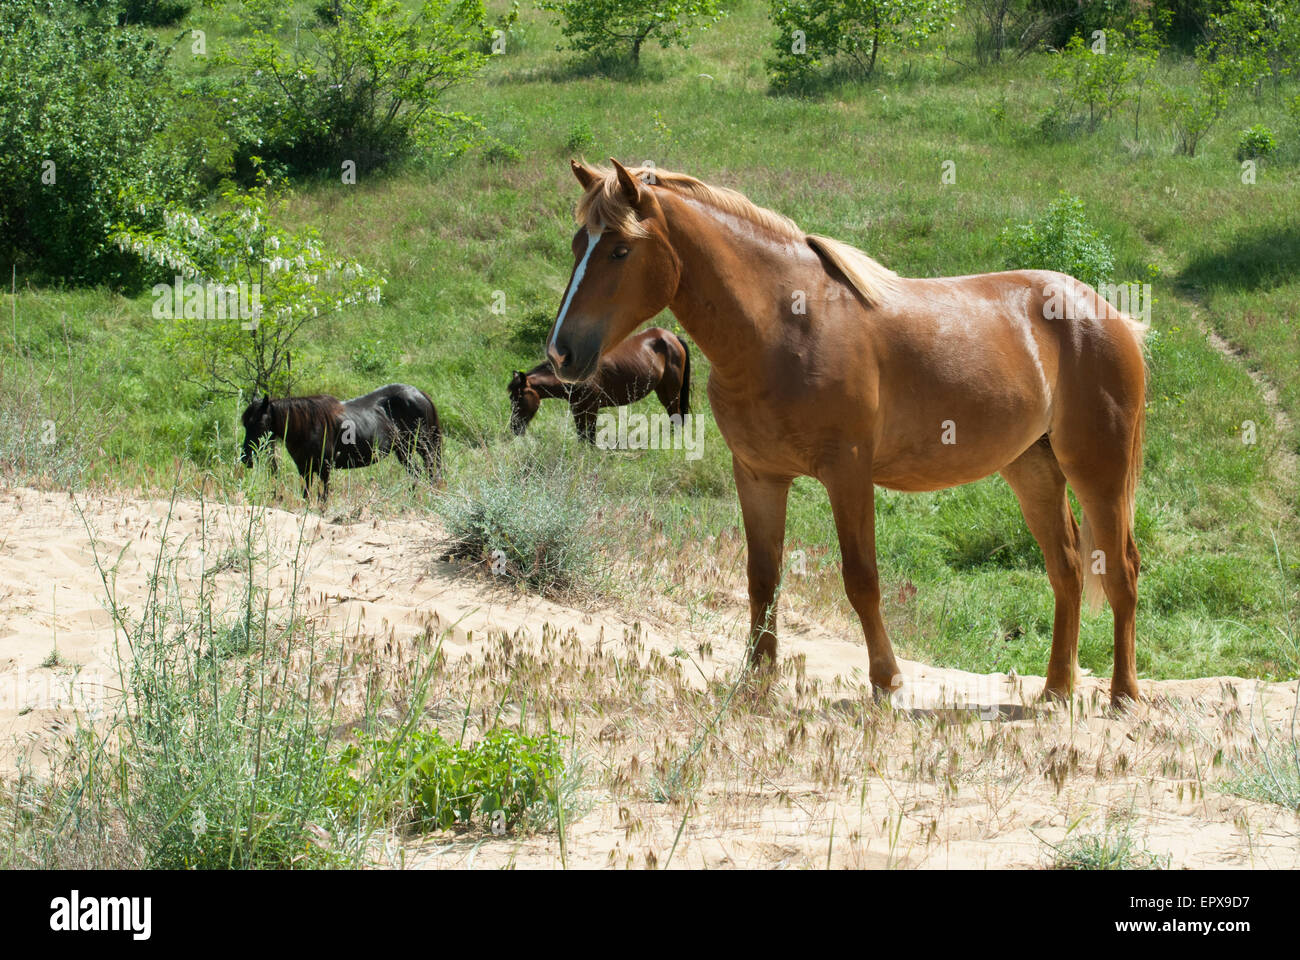 Horses feeding in a field Stock Photo